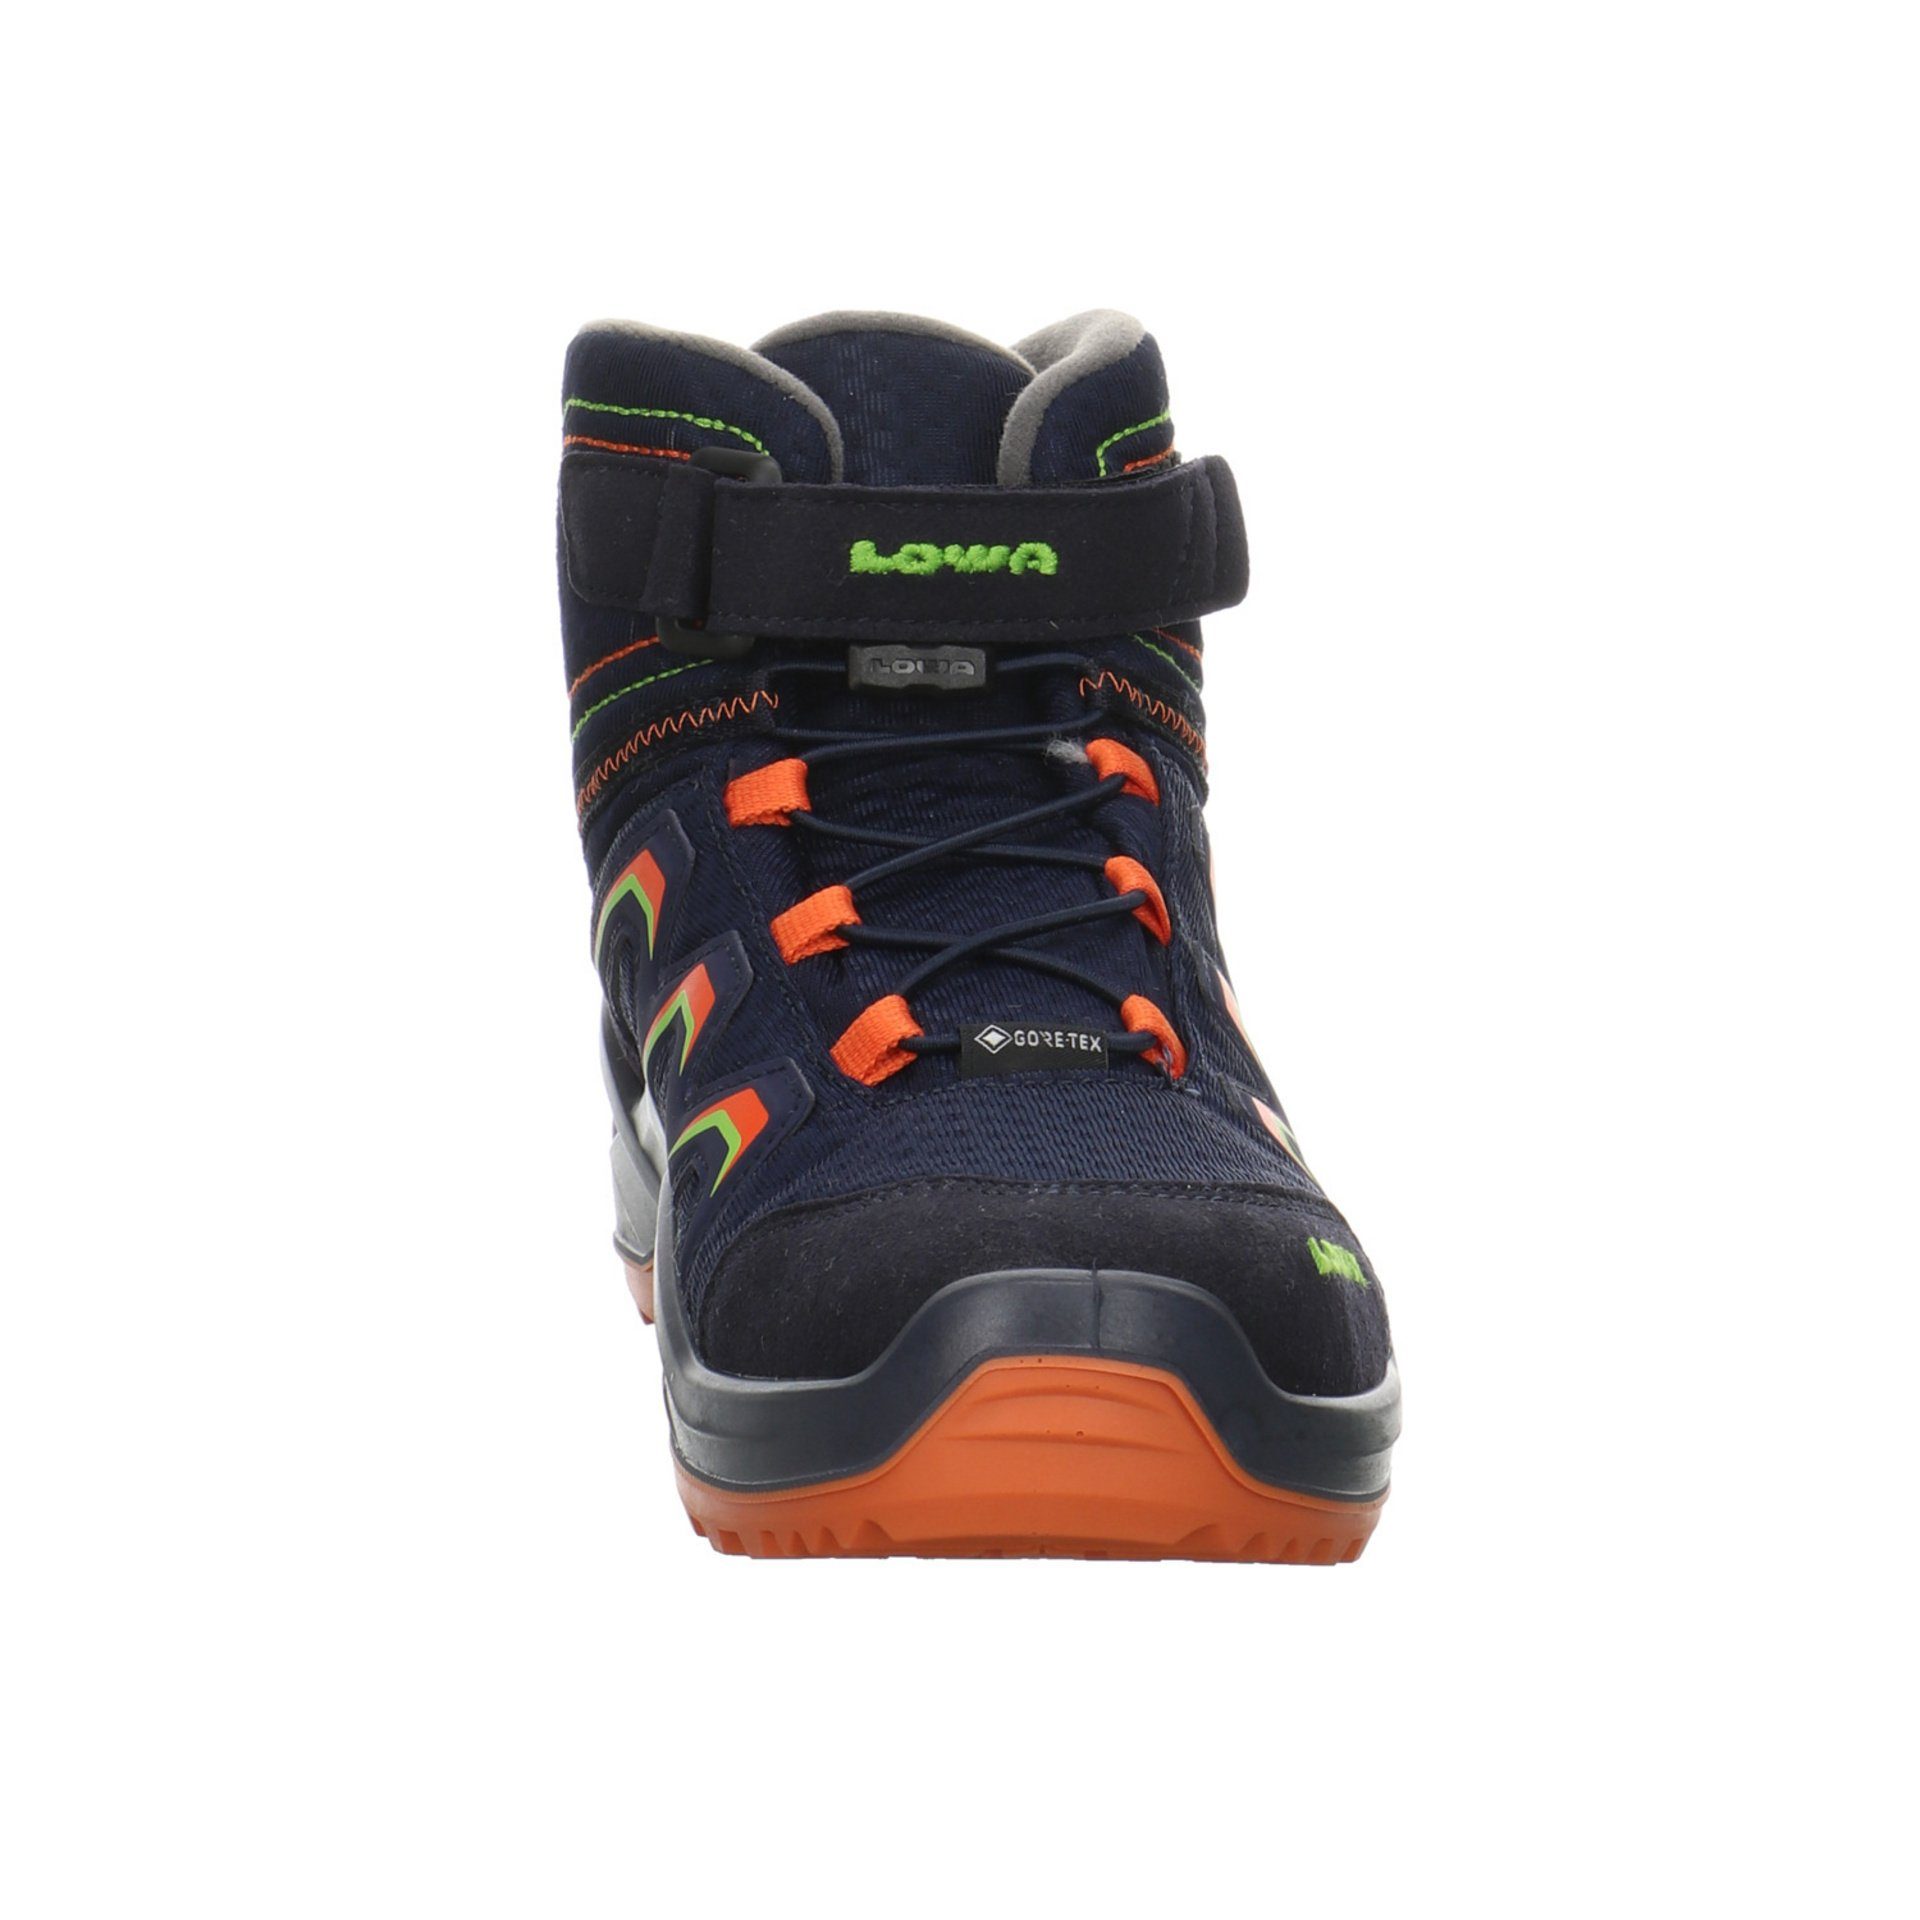 Lowa Jungen Stiefel Maddox navy/orange Schuhe Textil Warm GTX Stiefel Boots